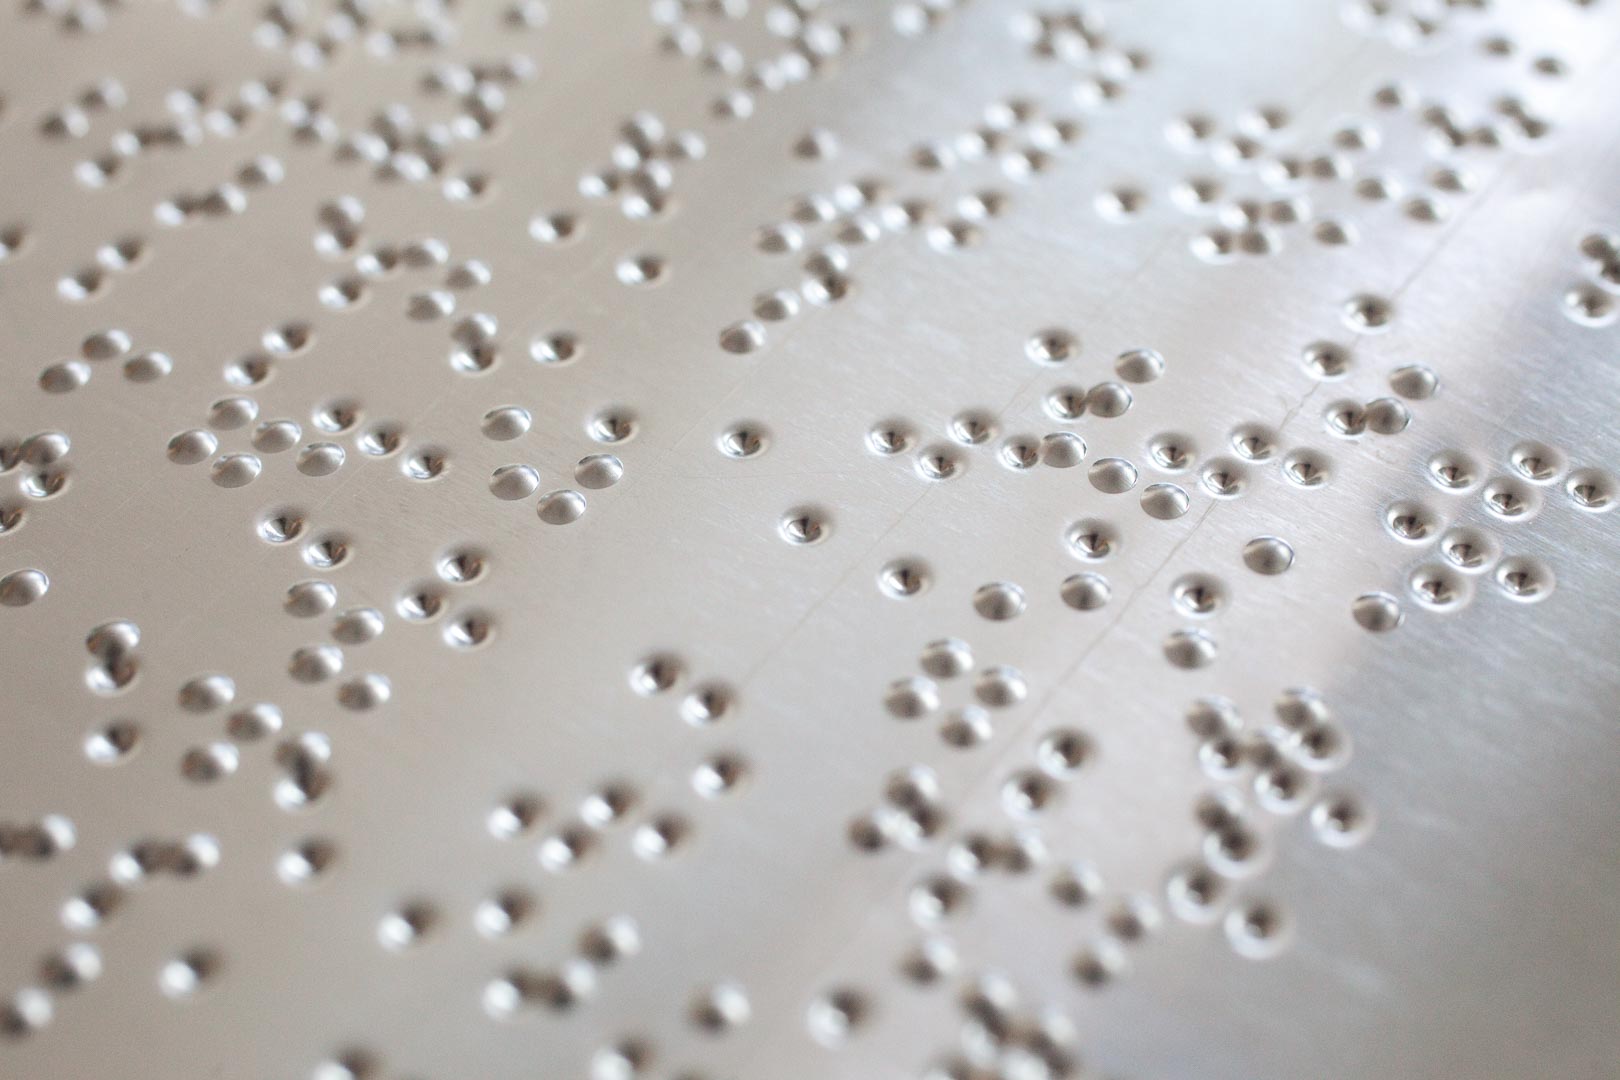 Punzierte Metallplatten zur Prägung des Papiers für die Herstellung von Geolino in Blindenschrift in der Deutschen Zentralbibliothek für Blinde, DZB: